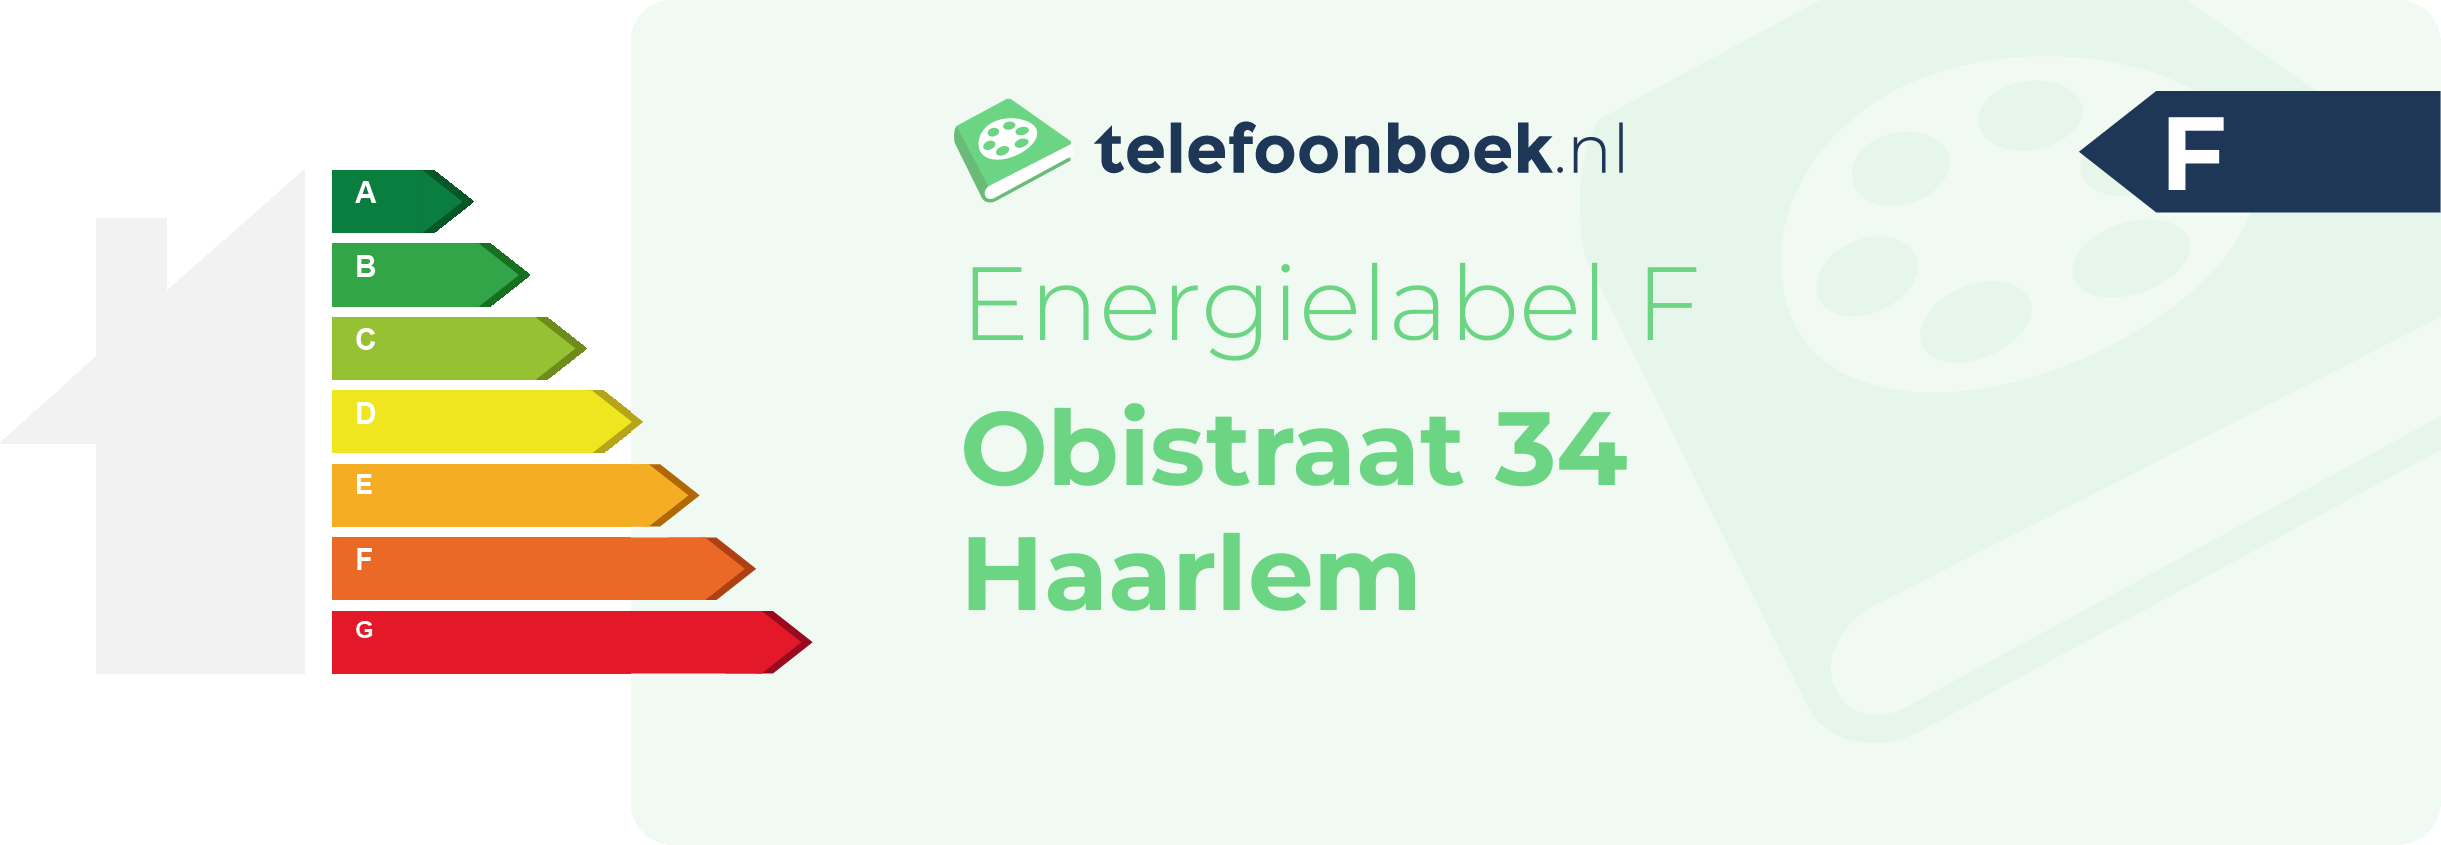 Energielabel Obistraat 34 Haarlem